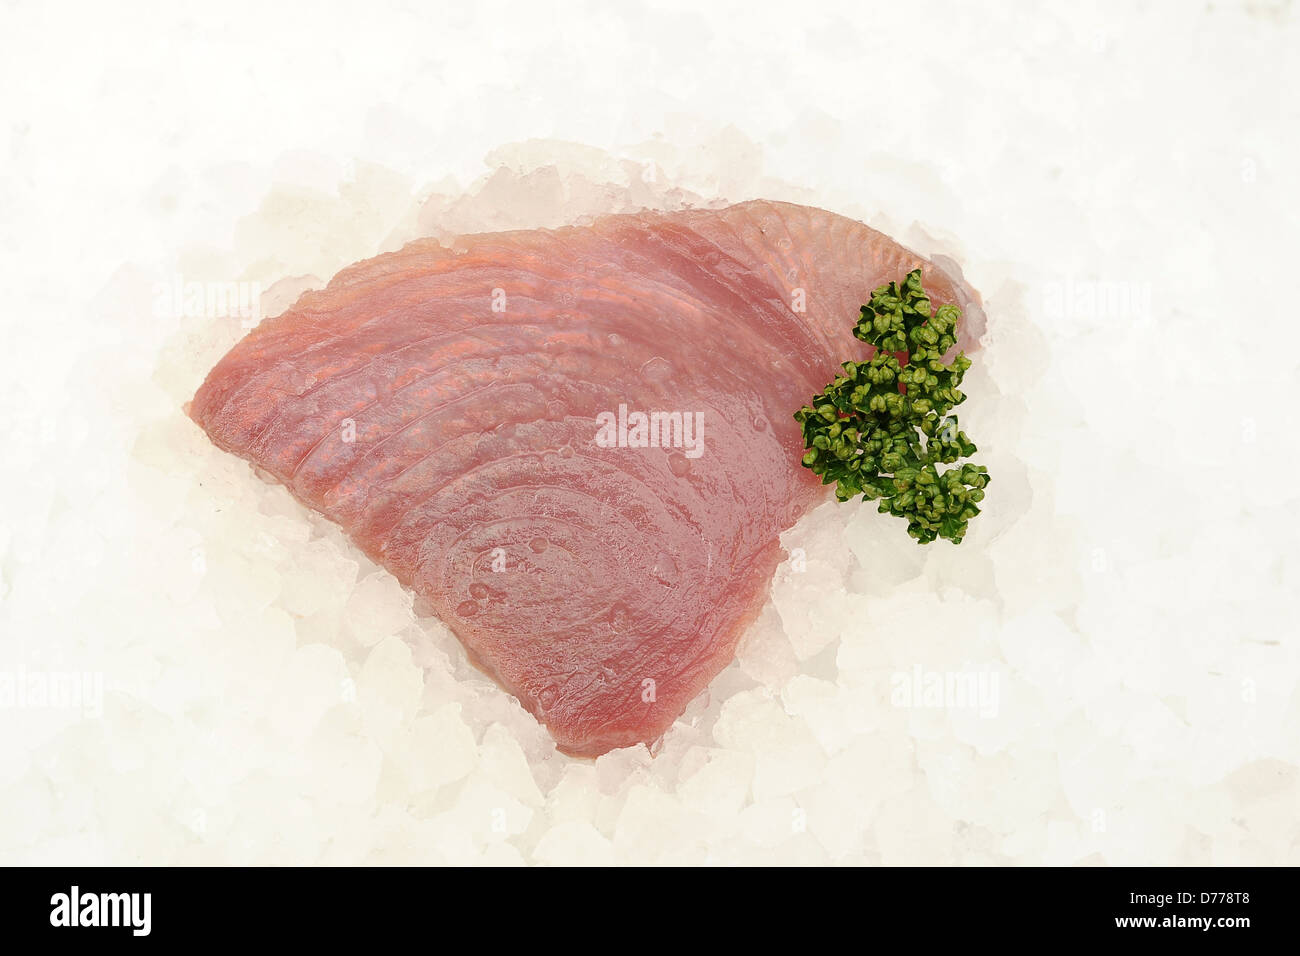 Un steak de thon sur un lit de glace. Banque D'Images